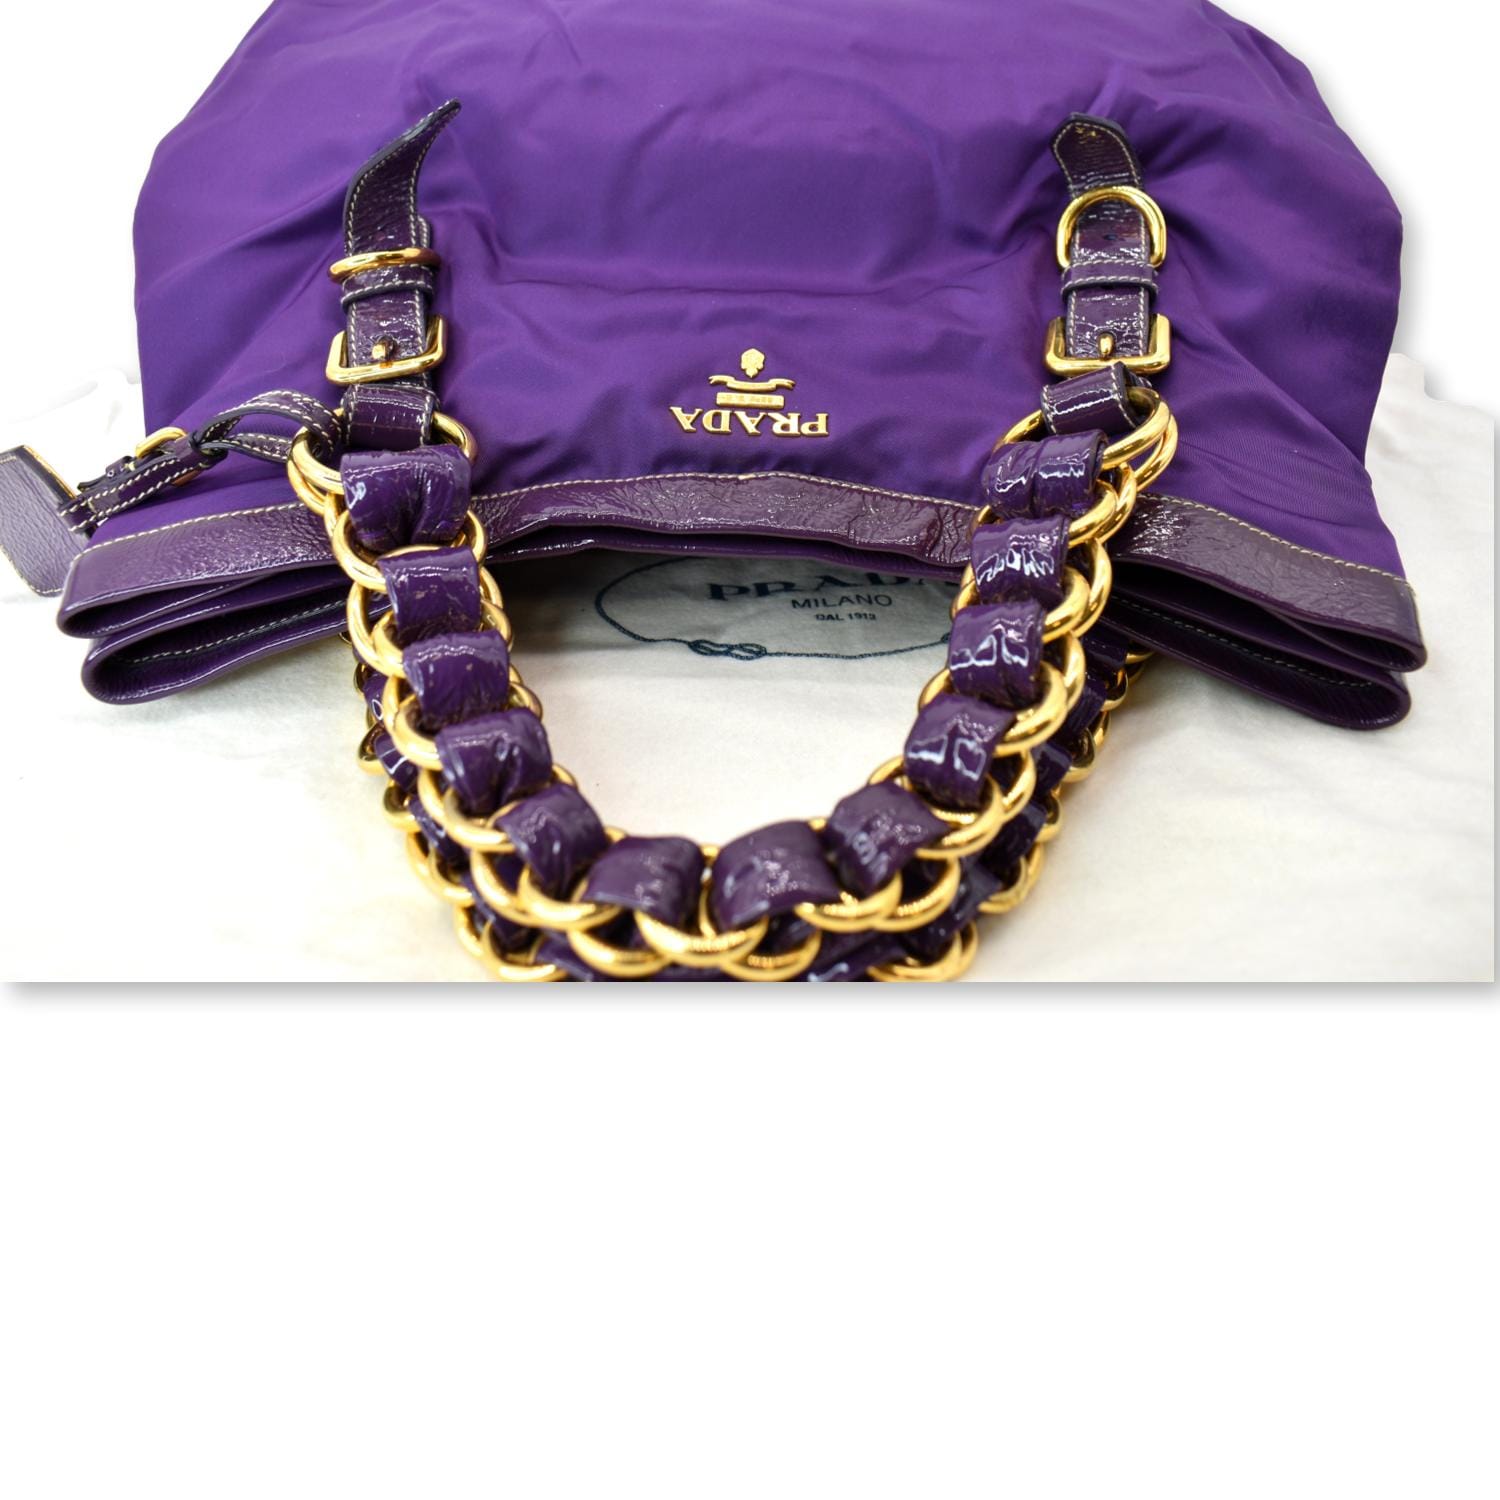 Prada Baguette Silk Satin Lilac Purple Shoulder Bag